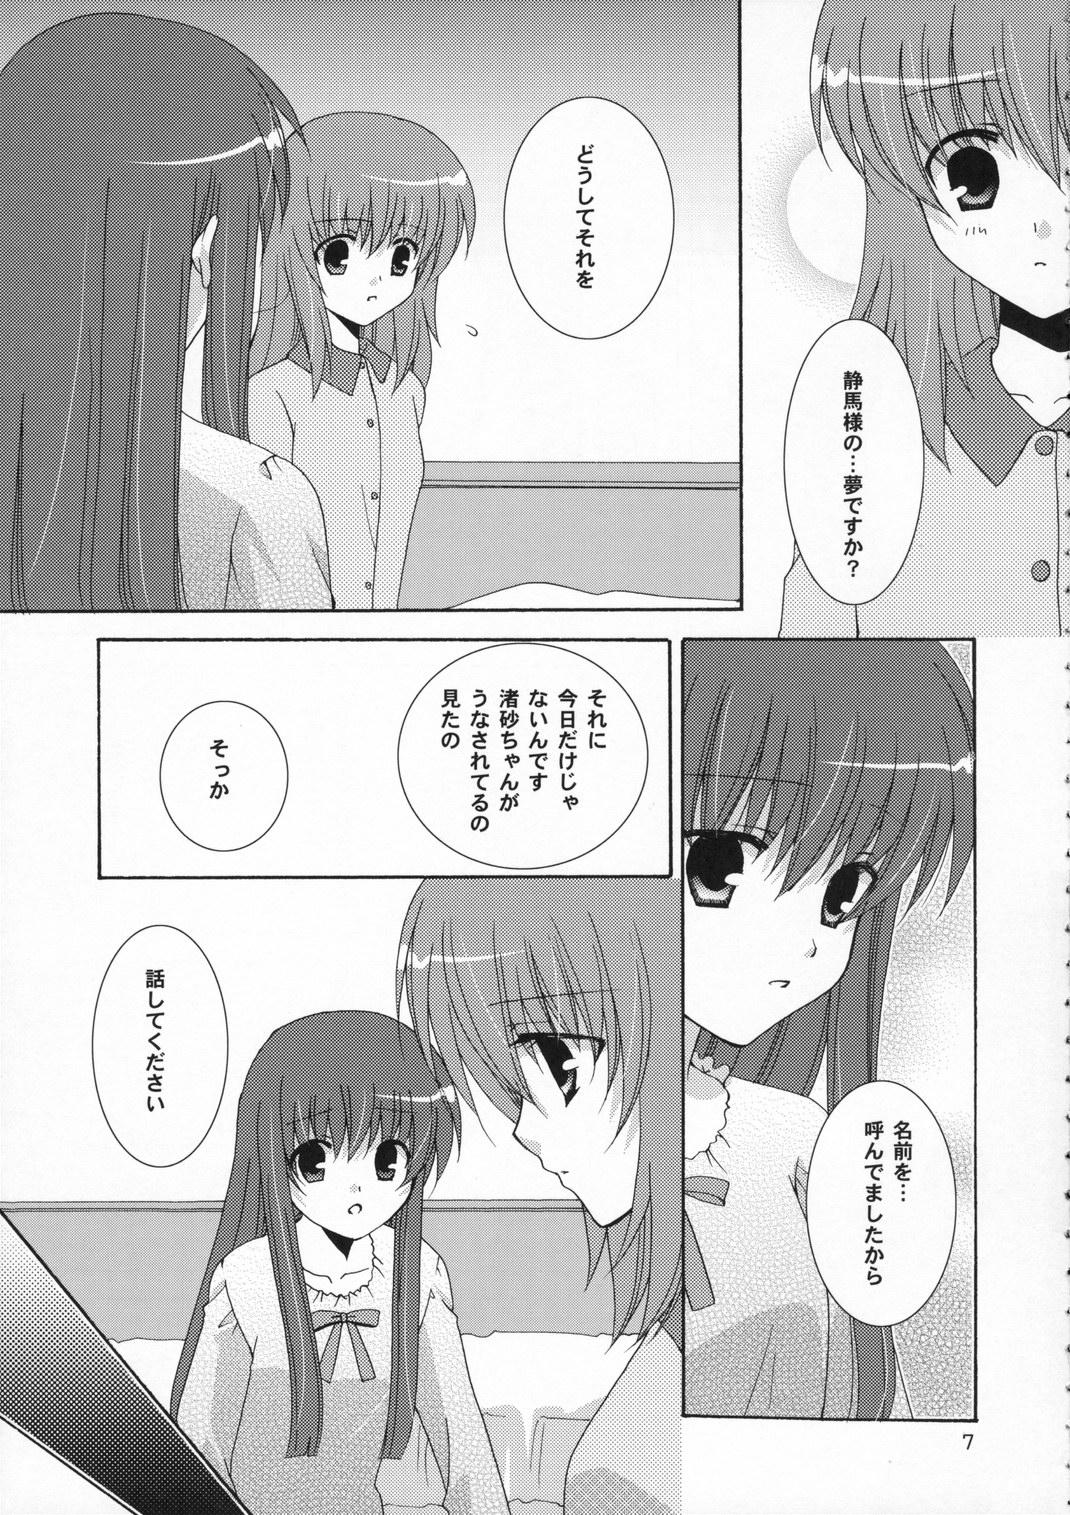 Japan Ichigo no Kimochi - Strawberry panic Shemale Porn - Page 7